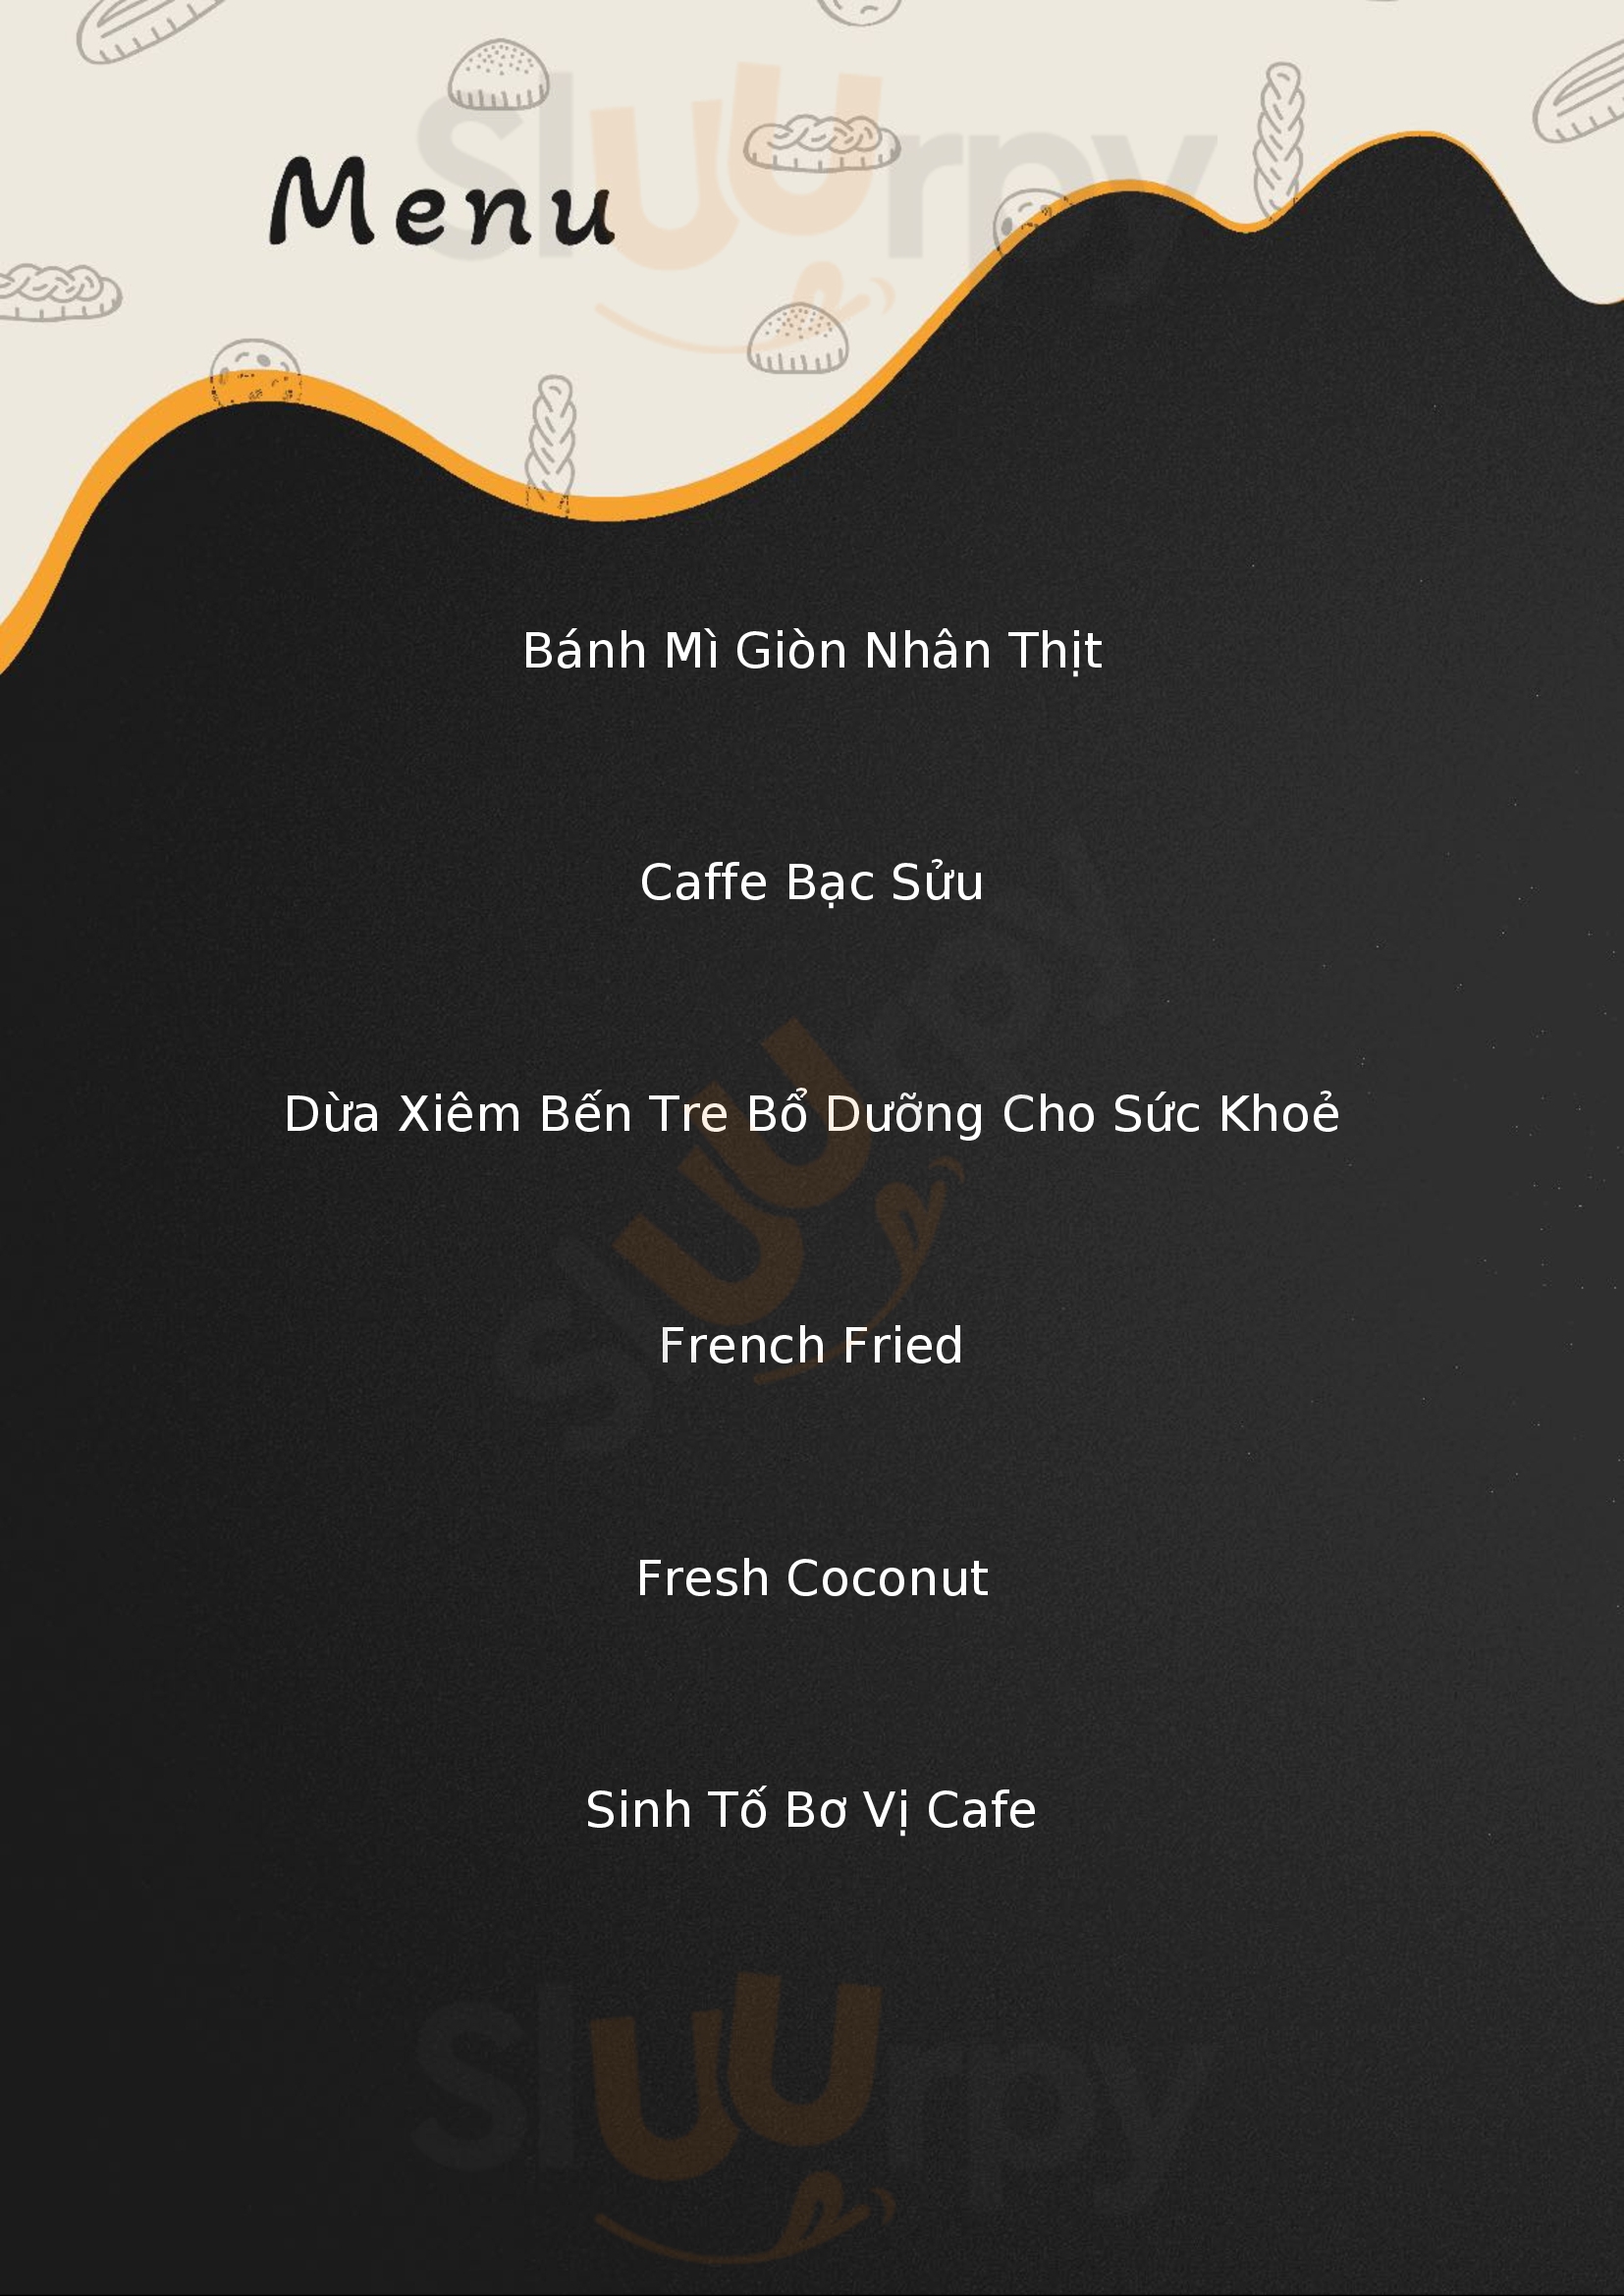 Cafe Thực Giang Ninh Bình Menu - 1